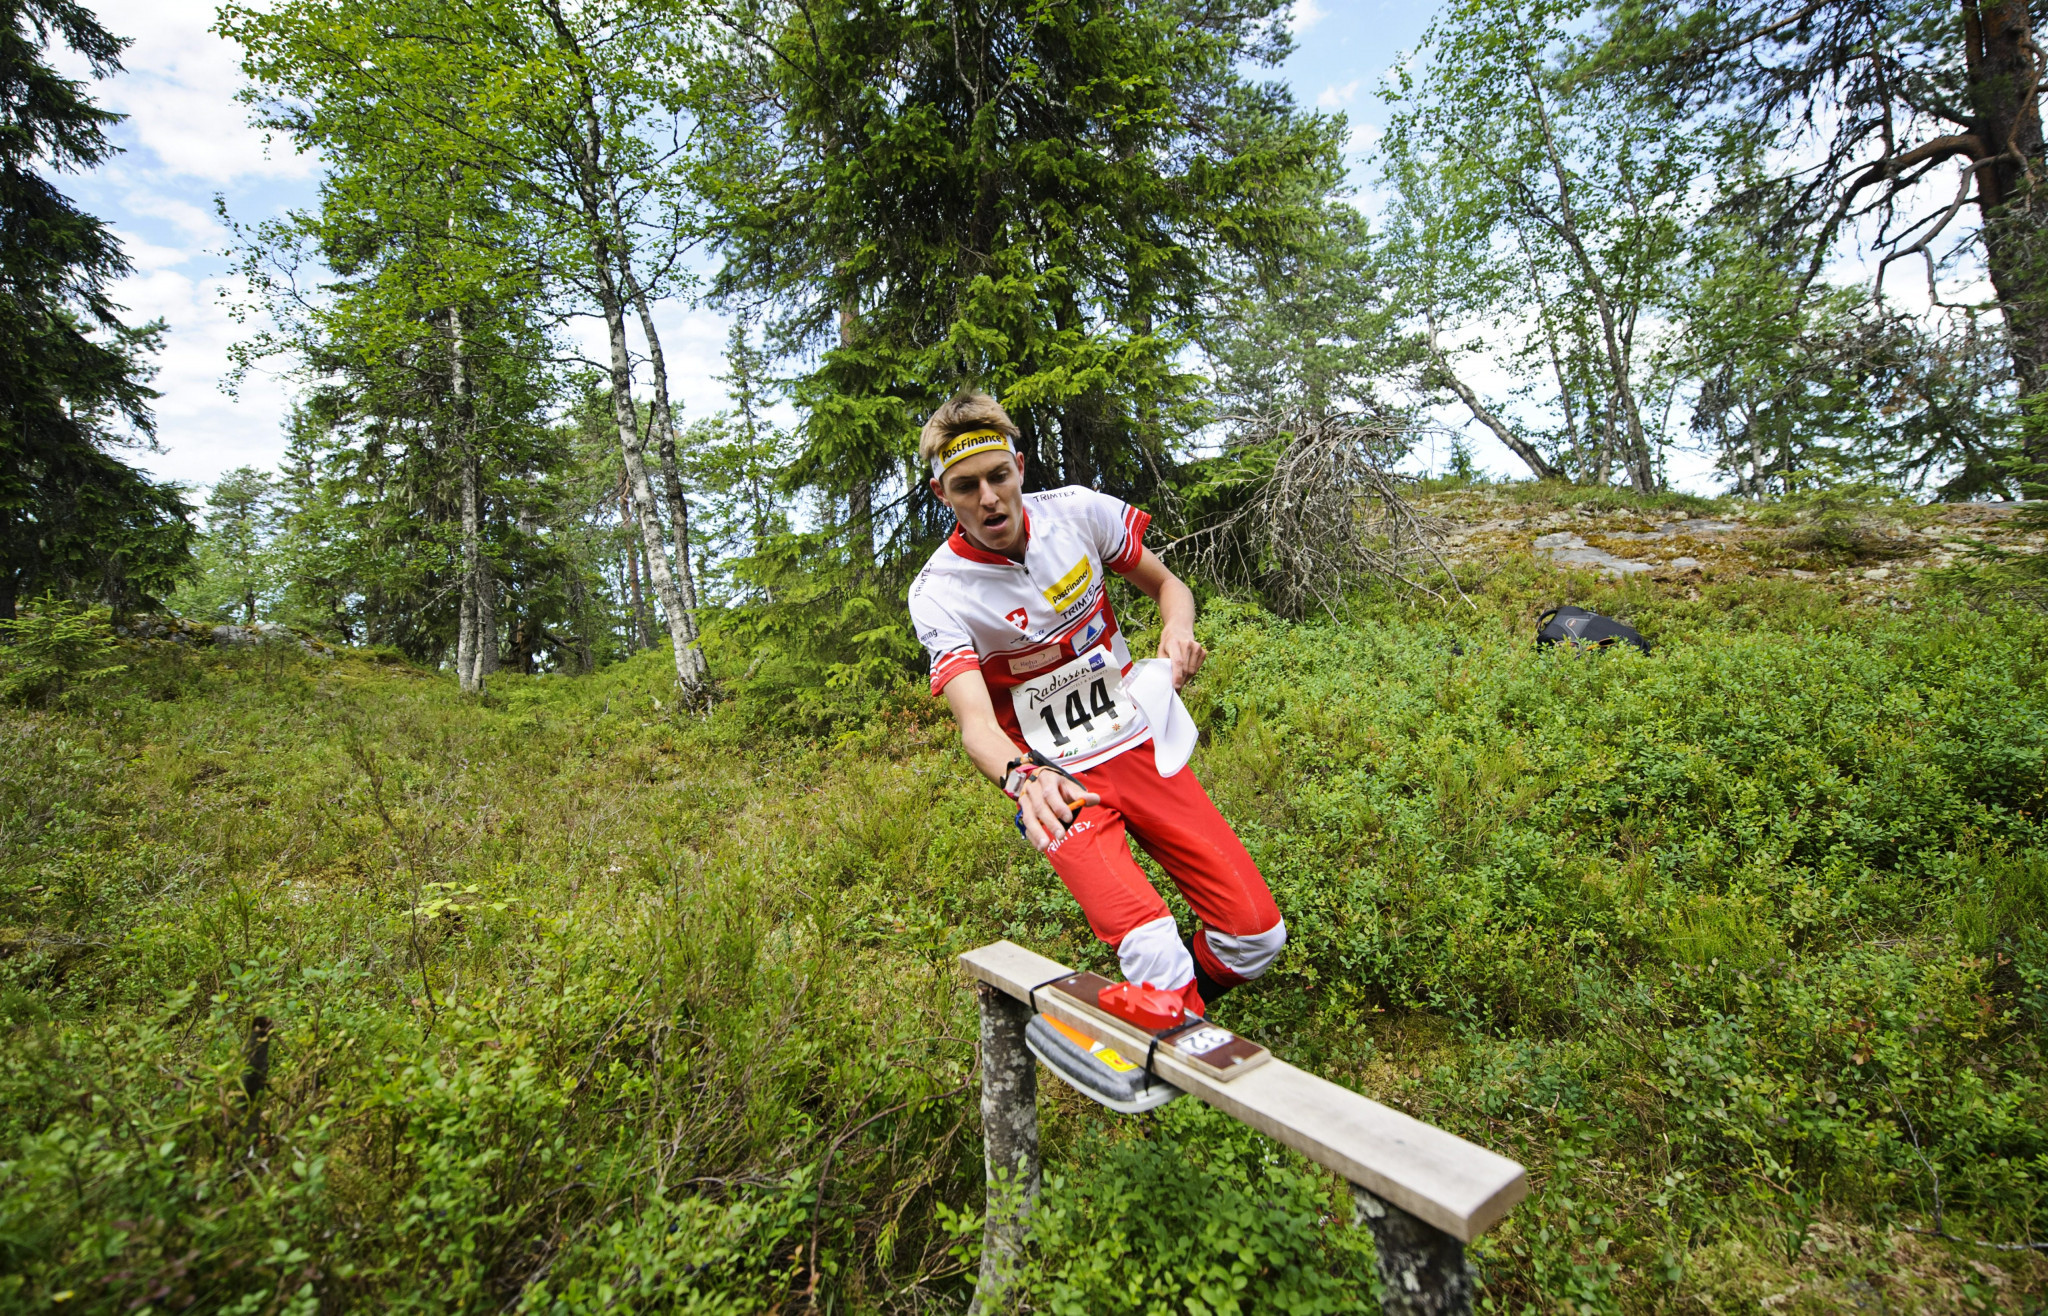 Matthias Kyburz won the men's sprint European orienteering title on home soil ©Getty Images